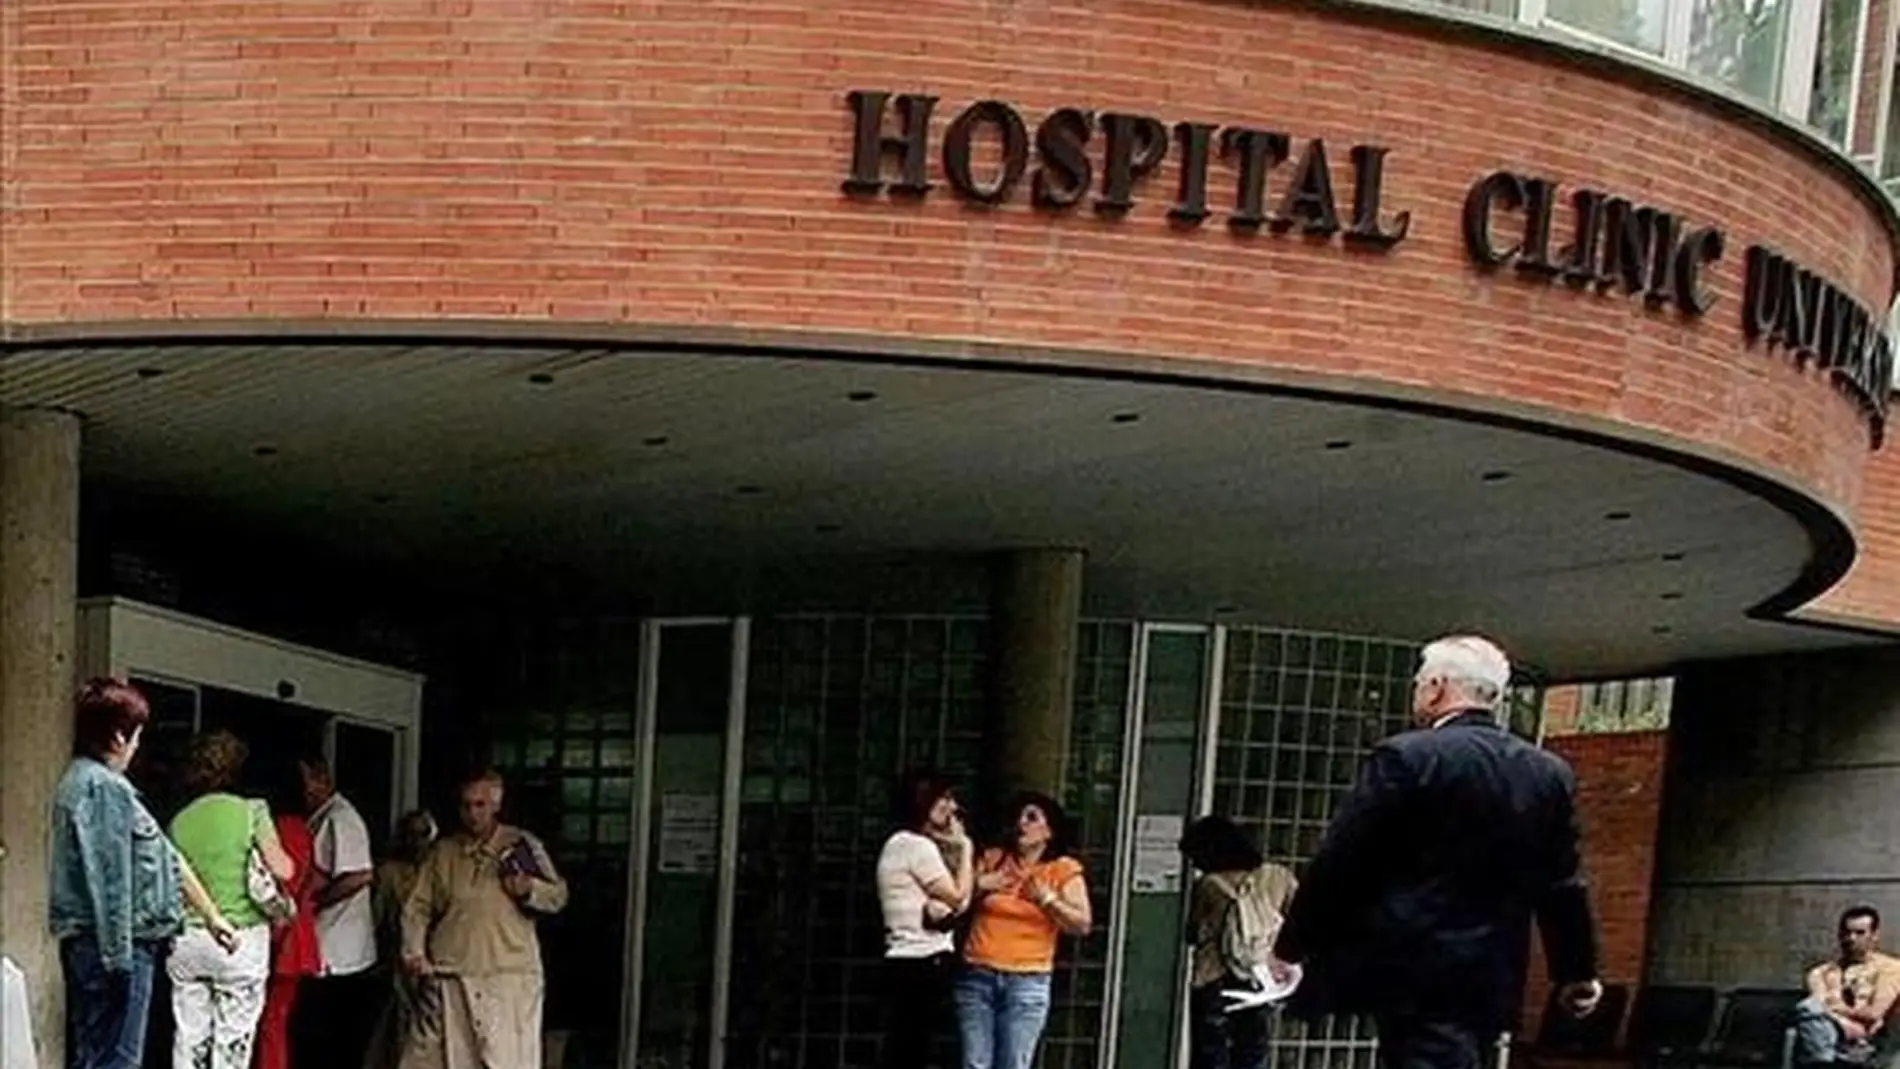 Fachada del Hospital Clínico de Valencia